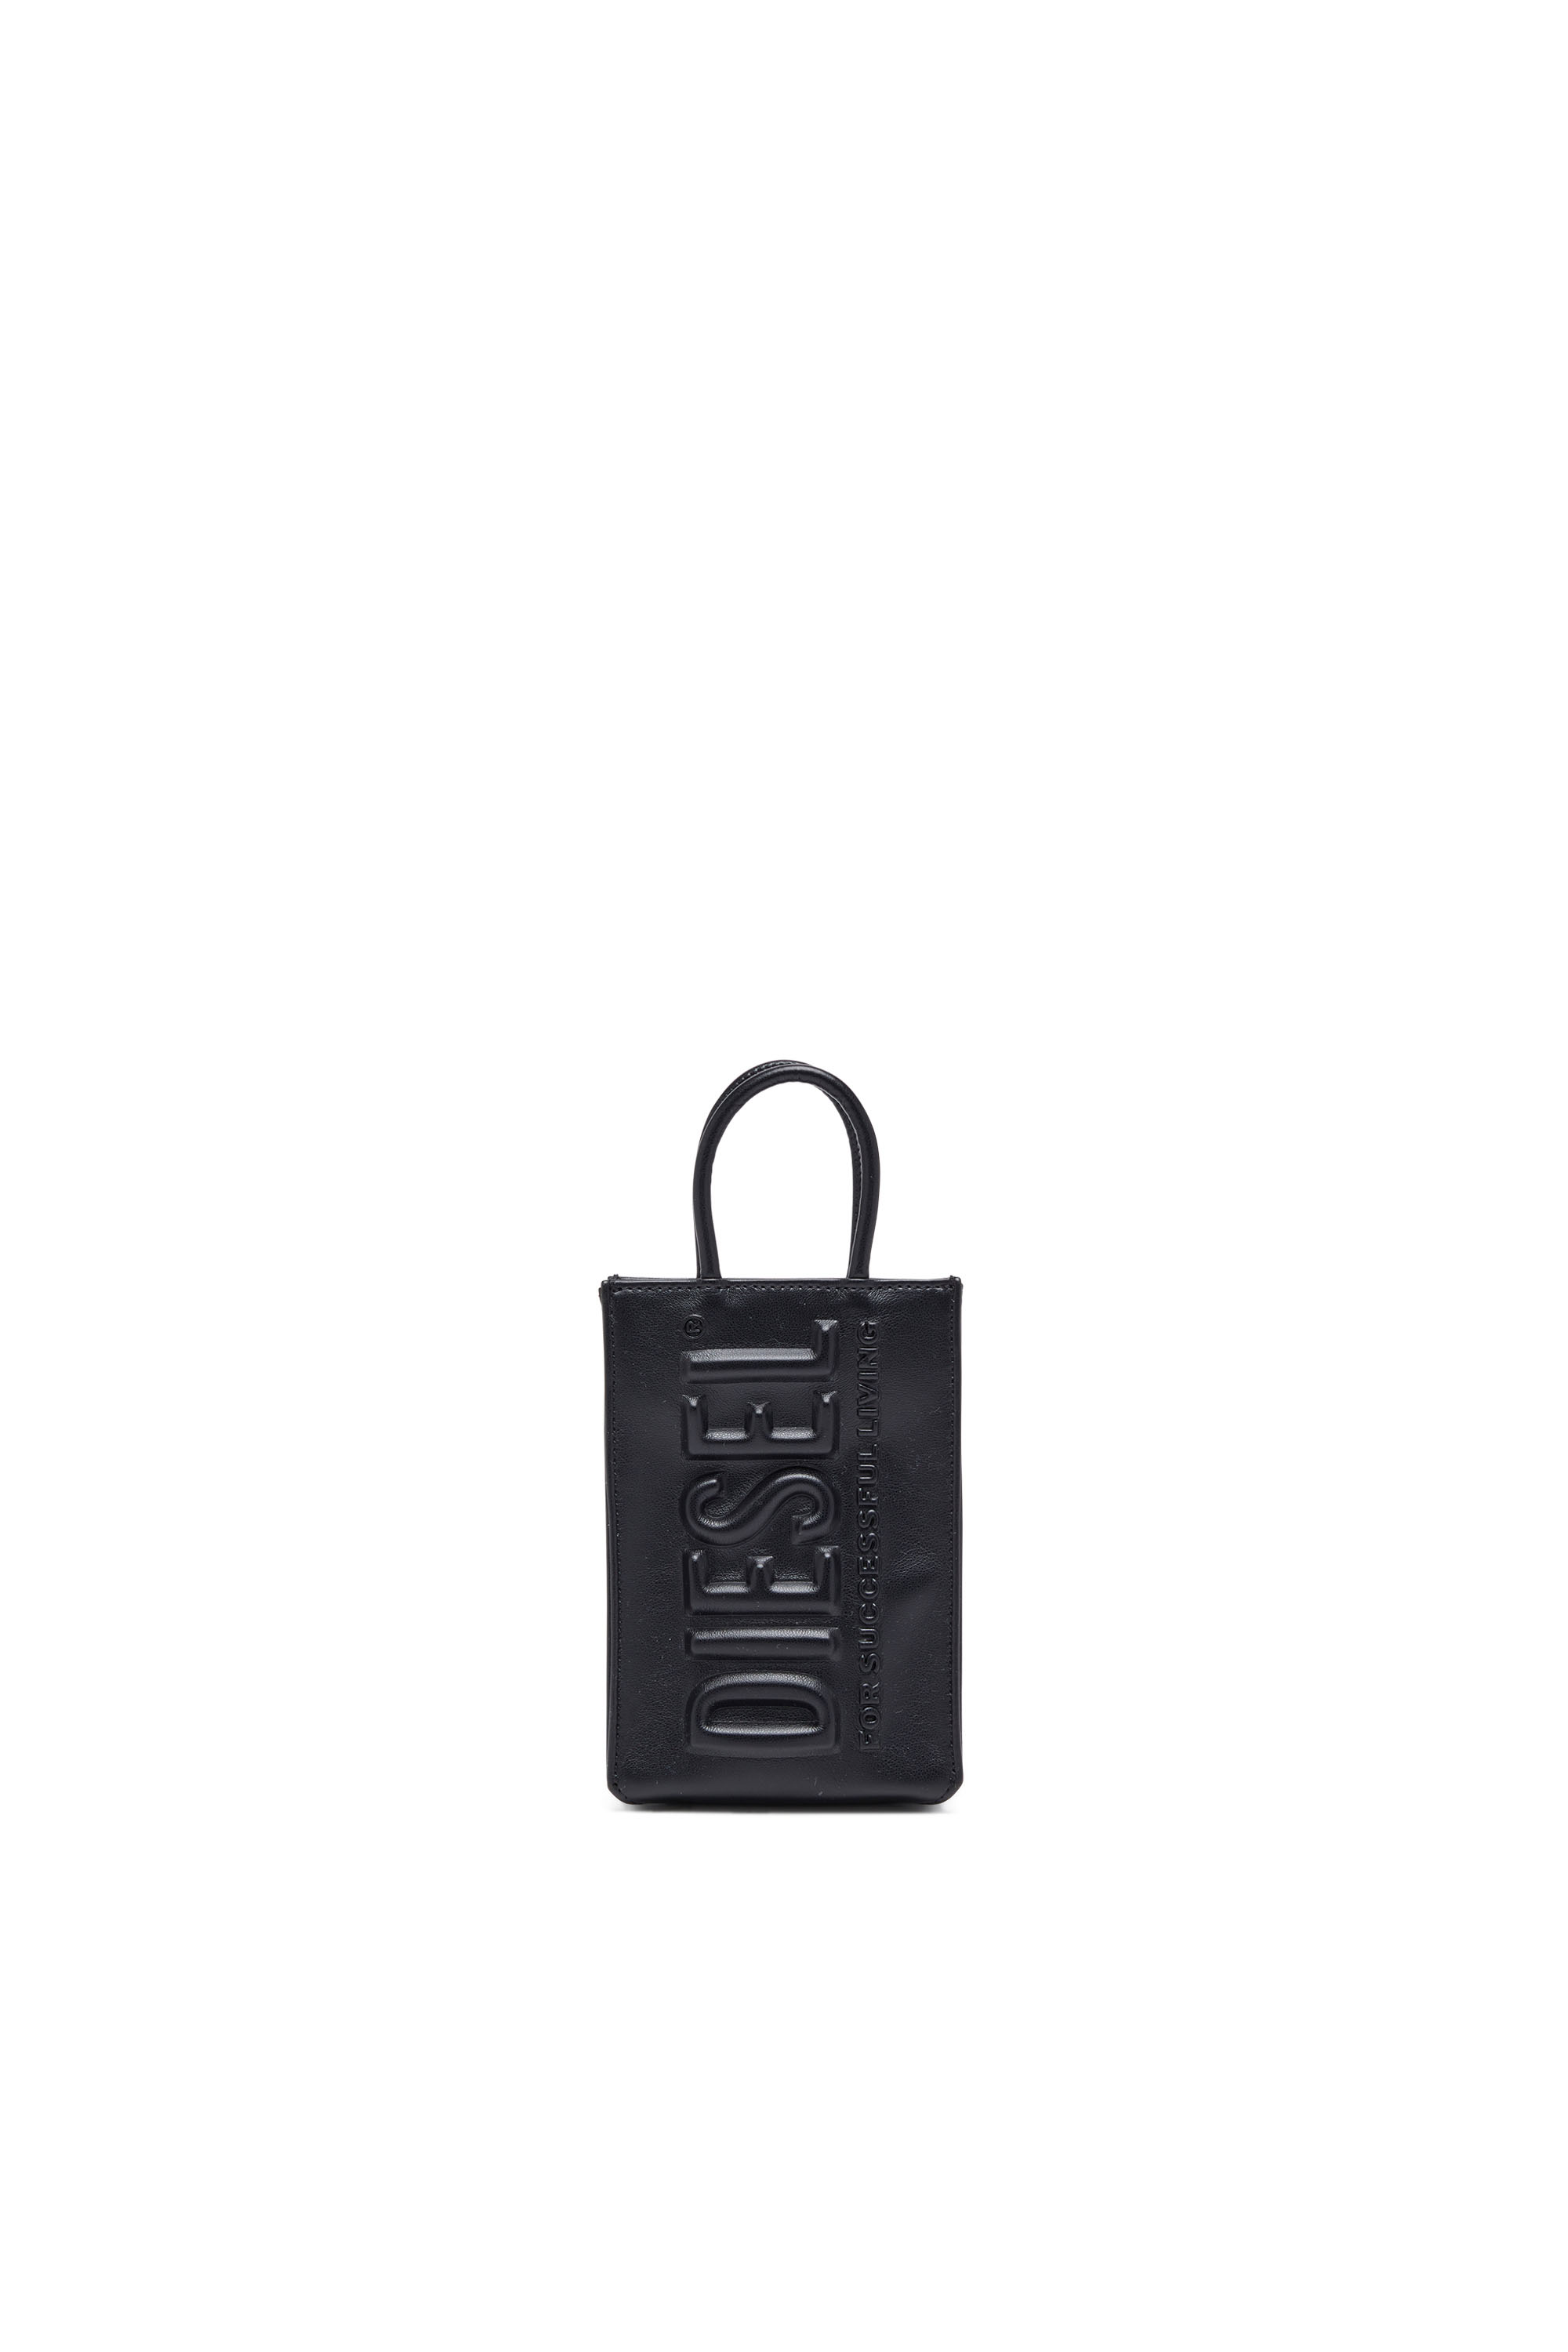 Diesel - DSL 3D SHOPPER MINI X, Unisex Dsl 3D Mini -Kleine Tote-Tasche aus PU mit Logo-Prägung in Schwarz - Image 1